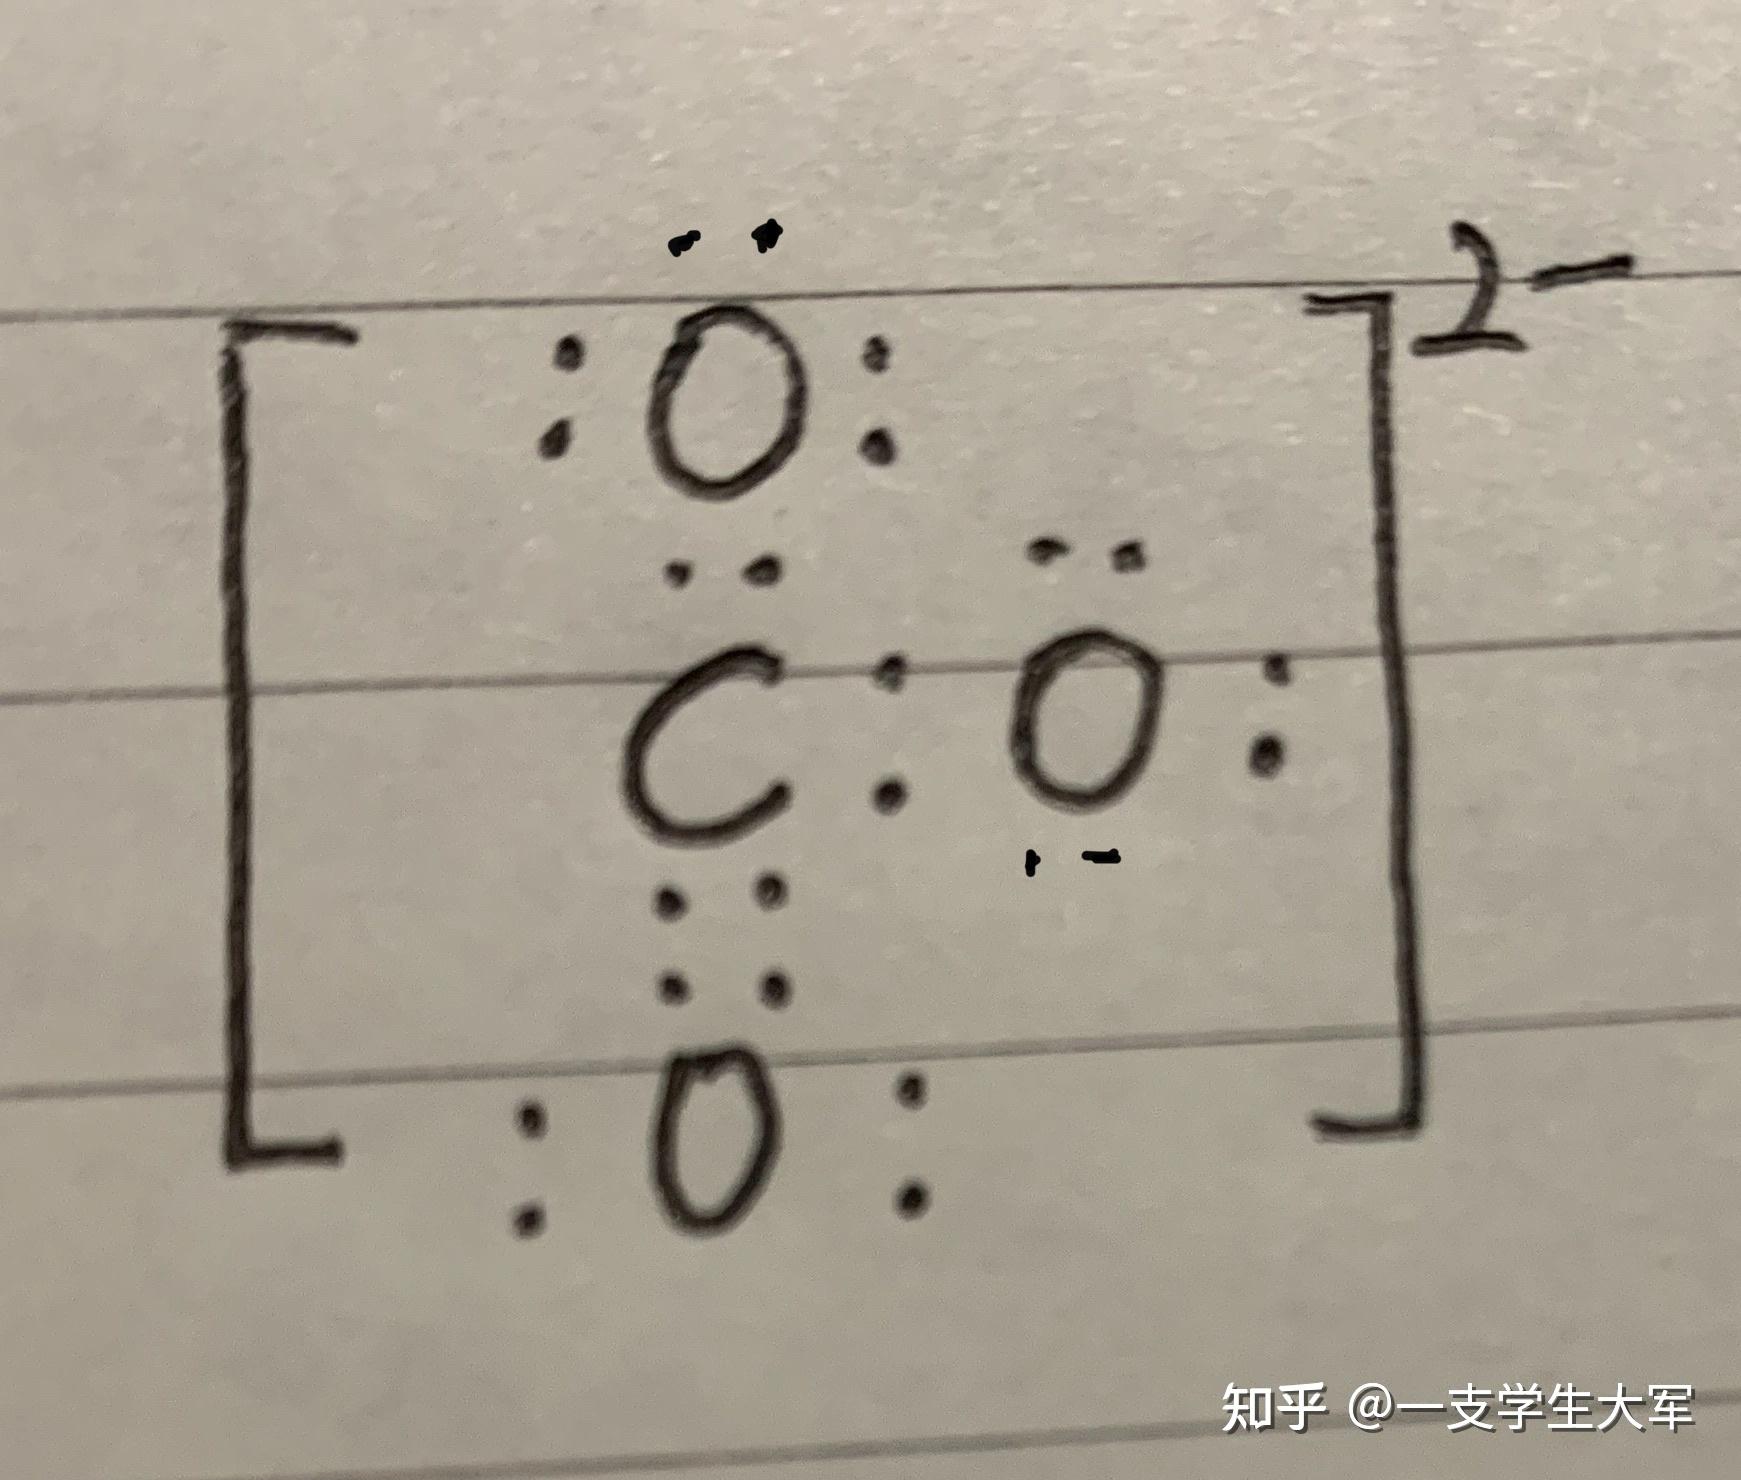 一氧化碳和碳酸根离子电子式怎么写? 